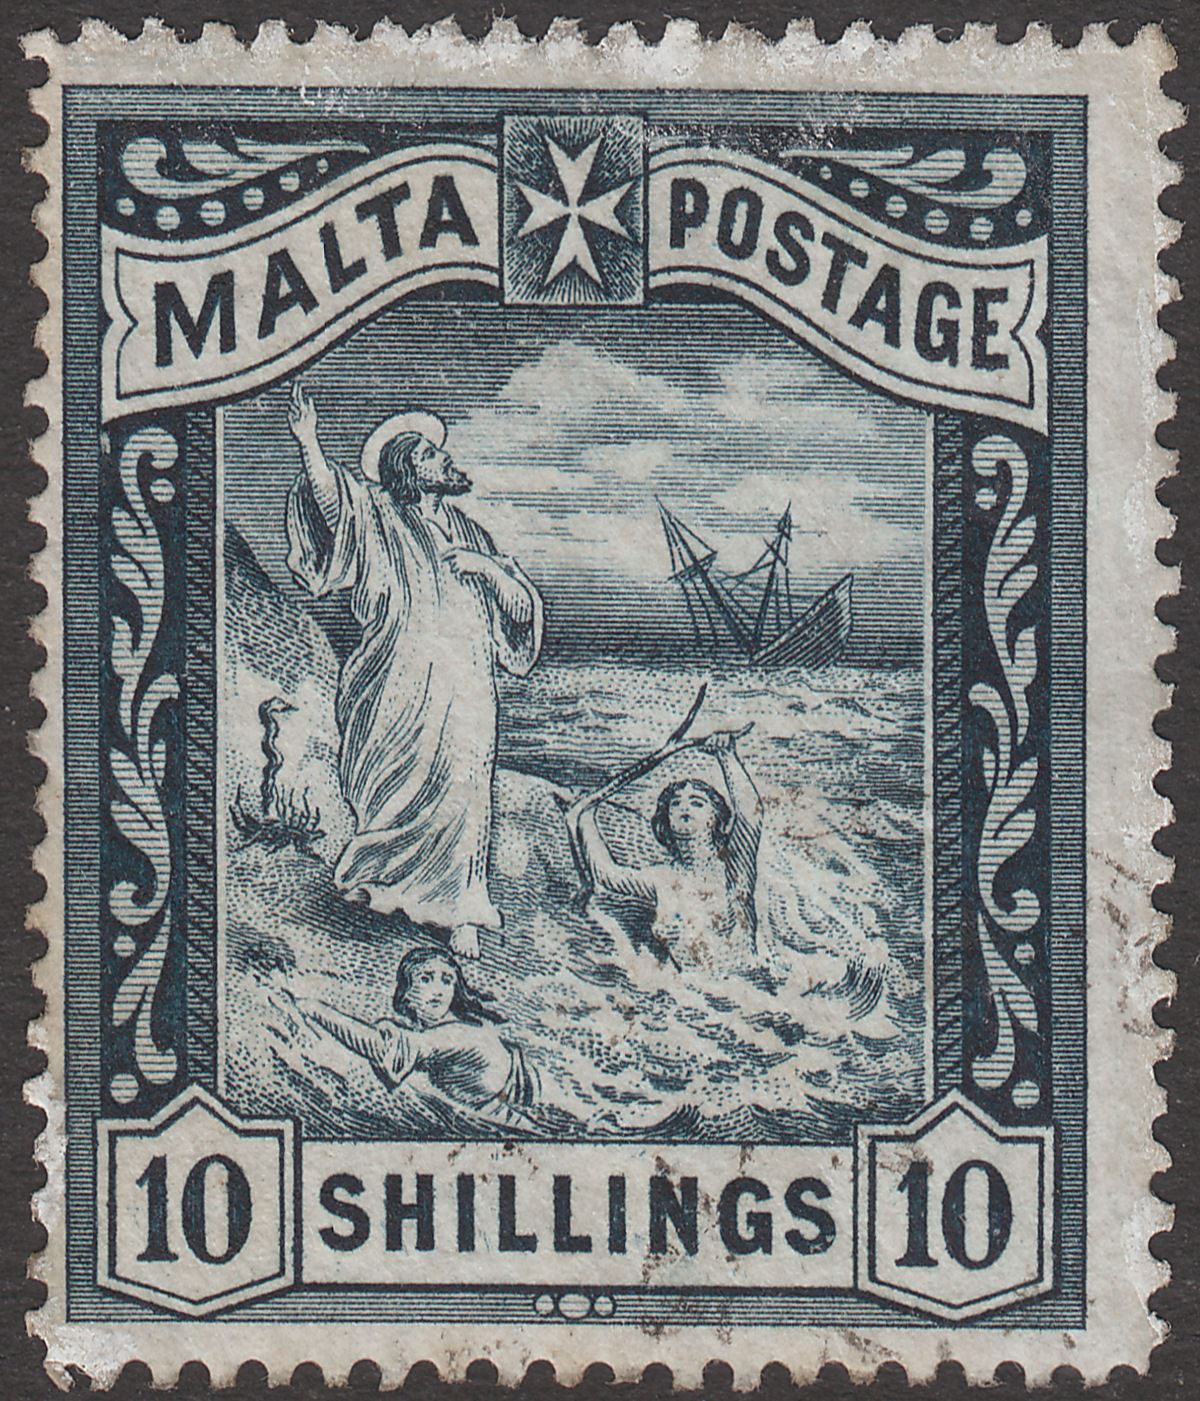 Malta 1899 QV Shipwreck St Paul 10sh Blue-Black Used SG35 cat £65 white marks